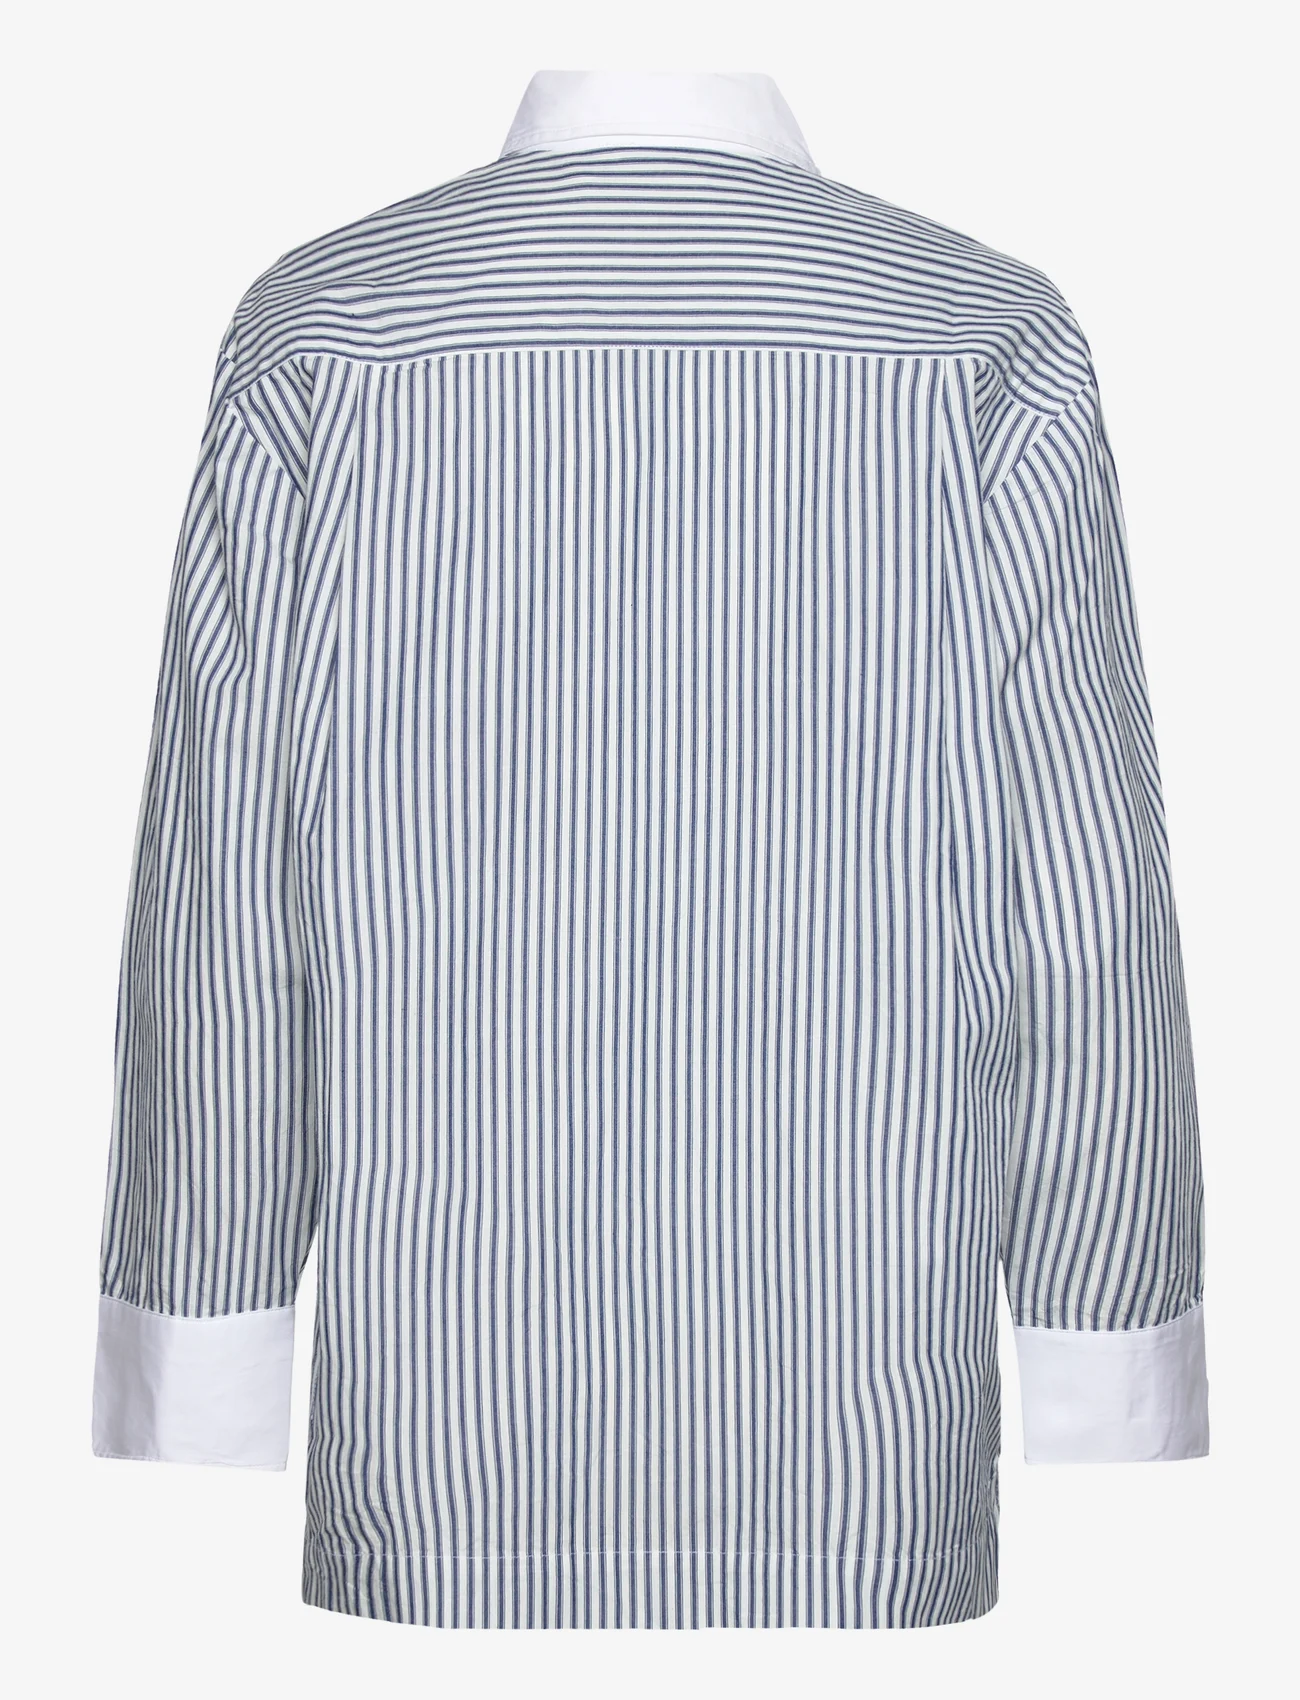 Rabens Saloner - Babara - marškiniai ilgomis rankovėmis - indigo stripe - 1